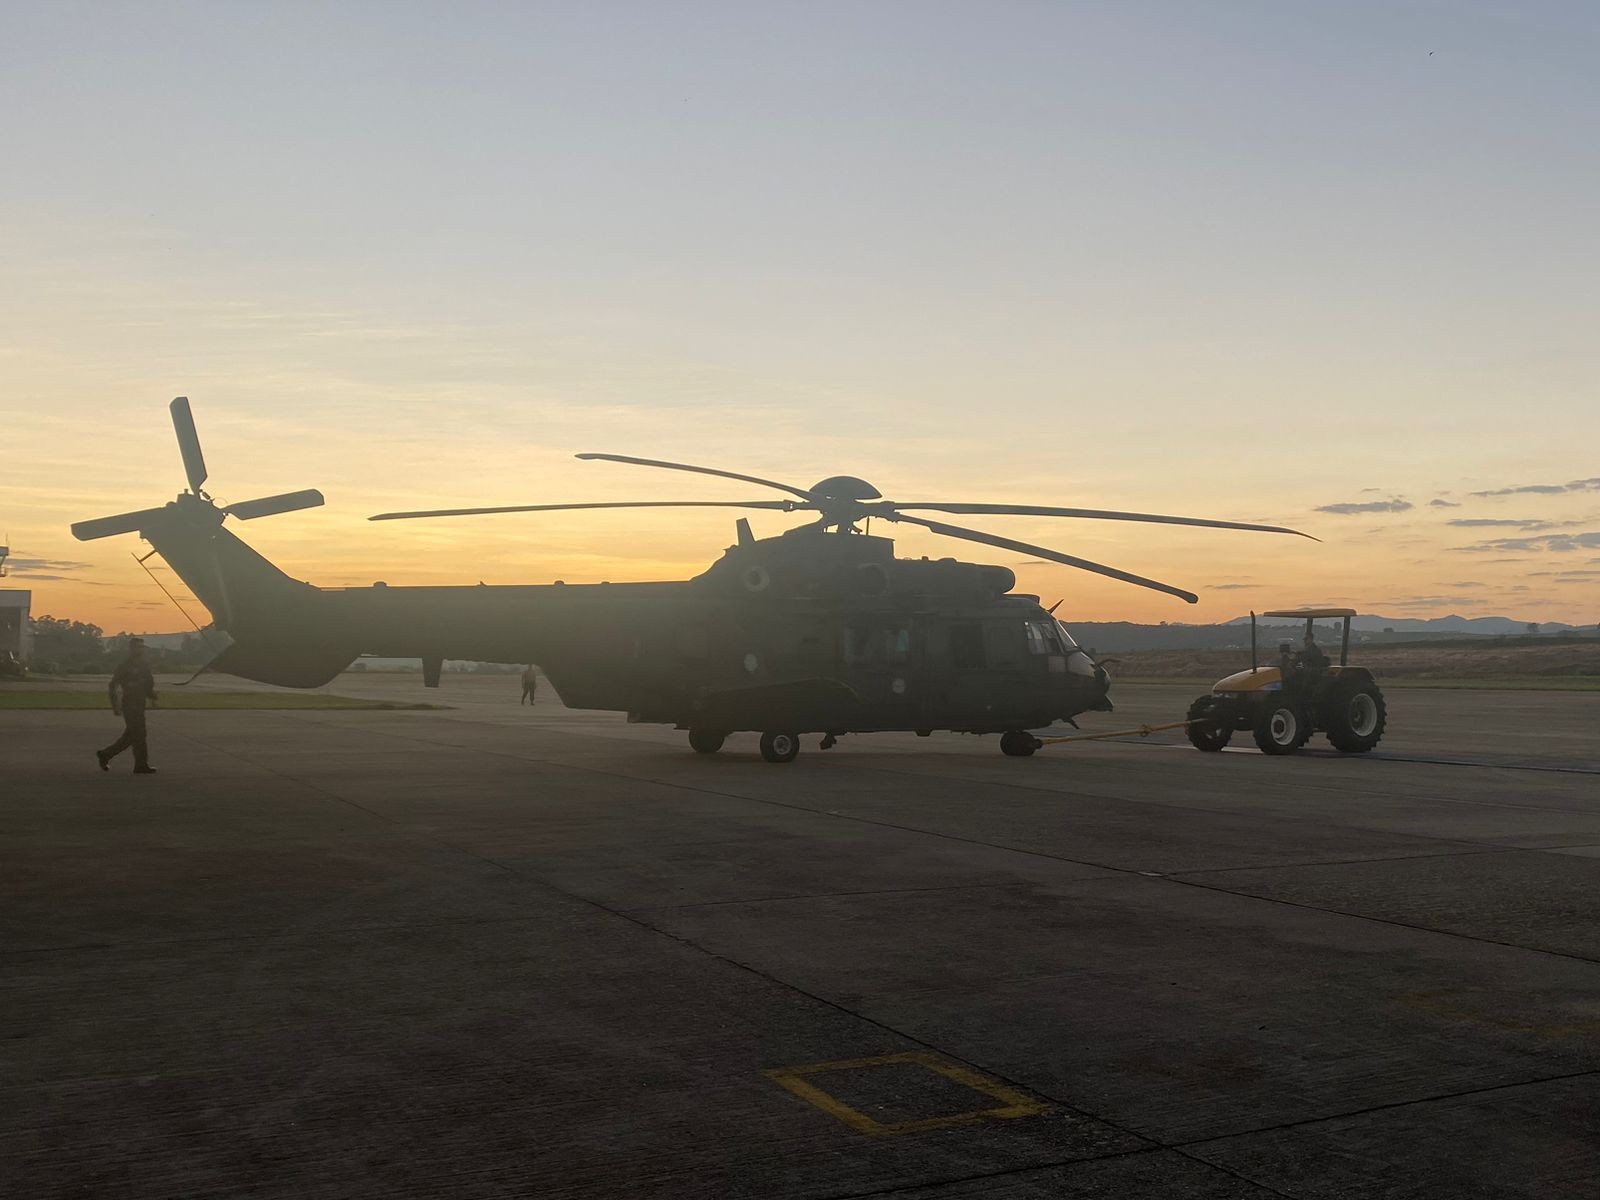 Cavex de Taubaté envia mais três helicópteros para operação de resgate de vítimas da chuva no RS